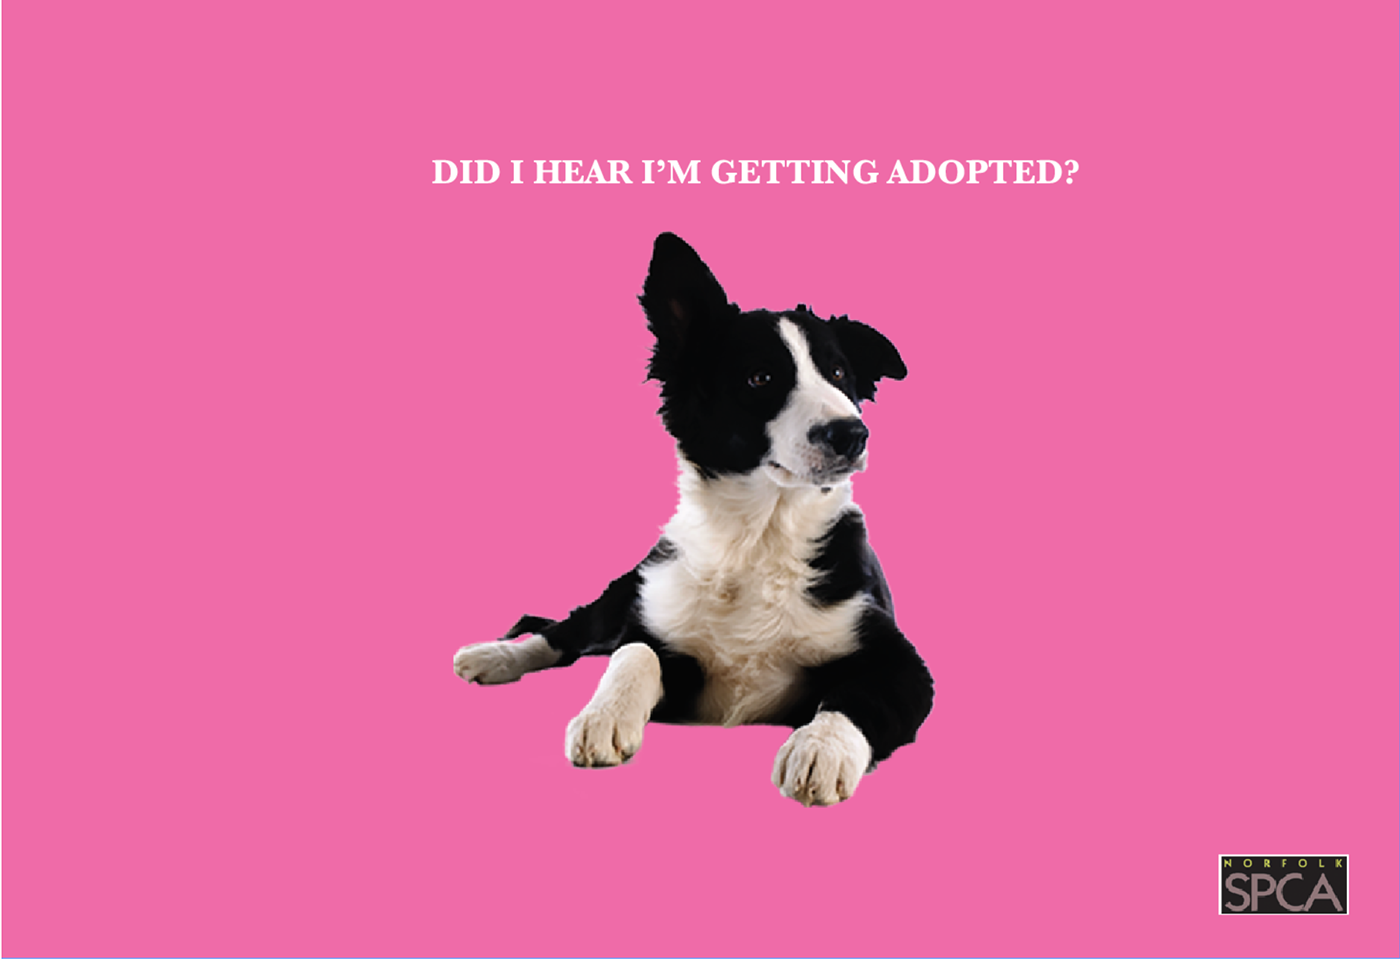 SPCA aspca SPCA AD ad campaign graphic design  social awareness Social Awareness Ad